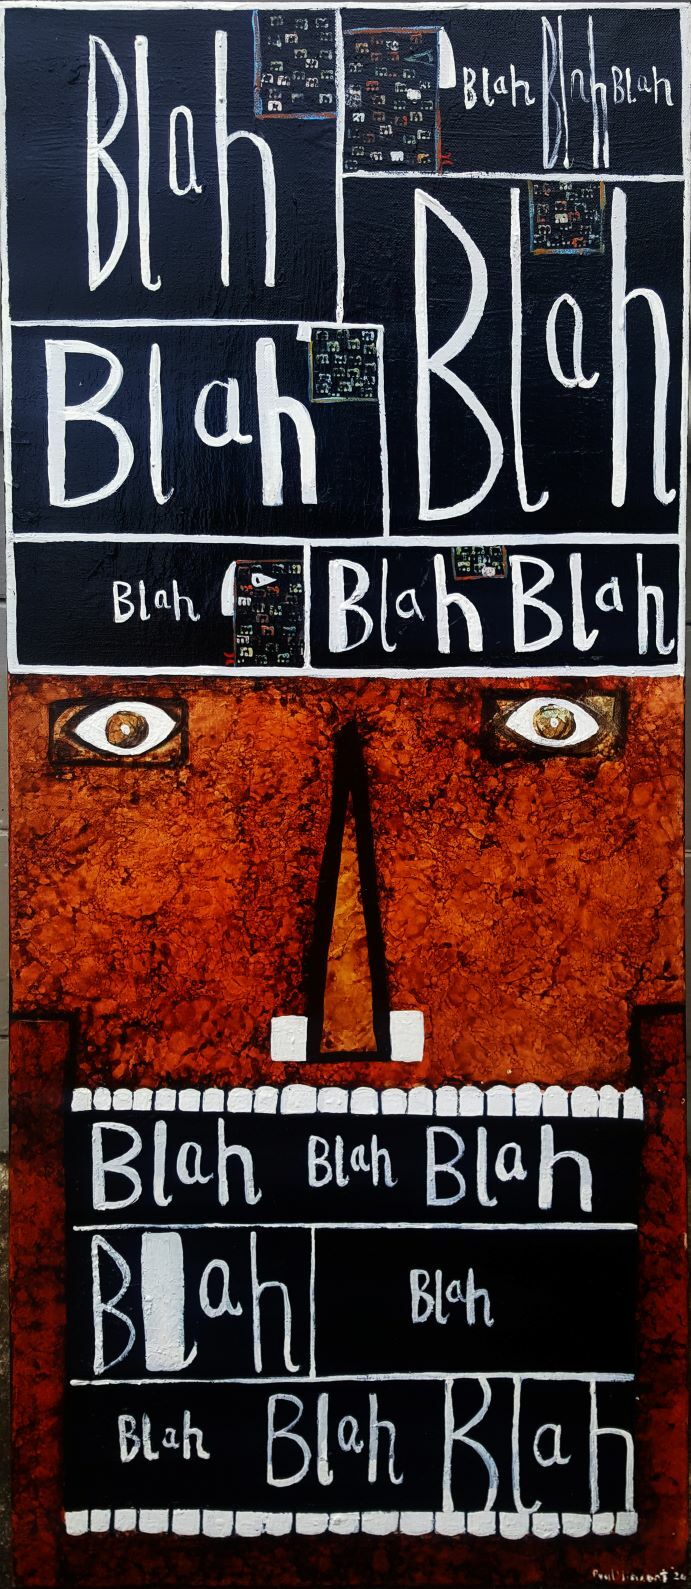 'Head On Blah Blah Blah' by Paul Vincent